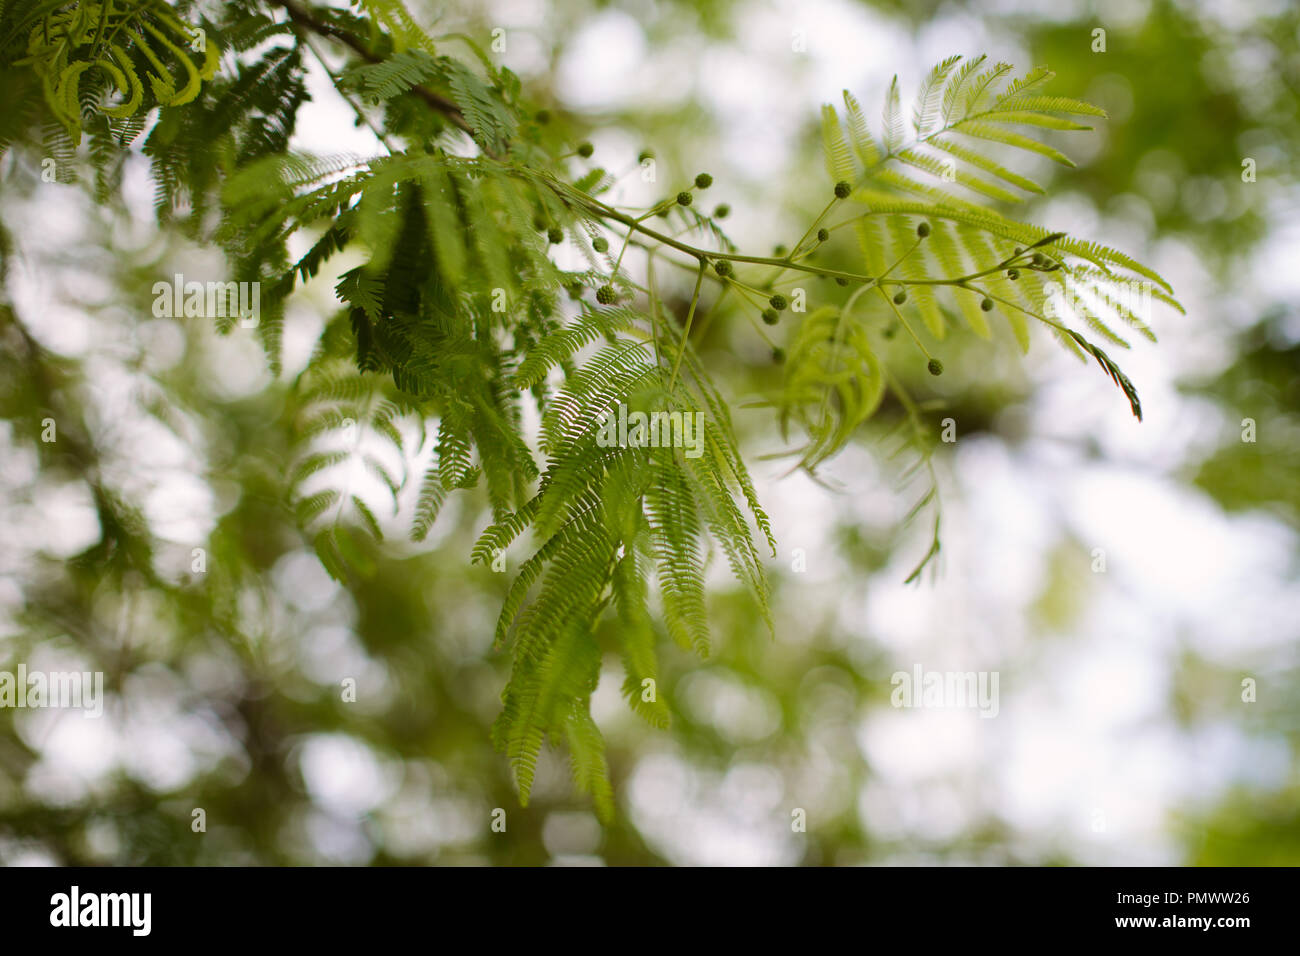 Close up of les feuilles duveteuses d'un Mimosa (Acacia) arbre au début du printemps sur l'image Banque D'Images